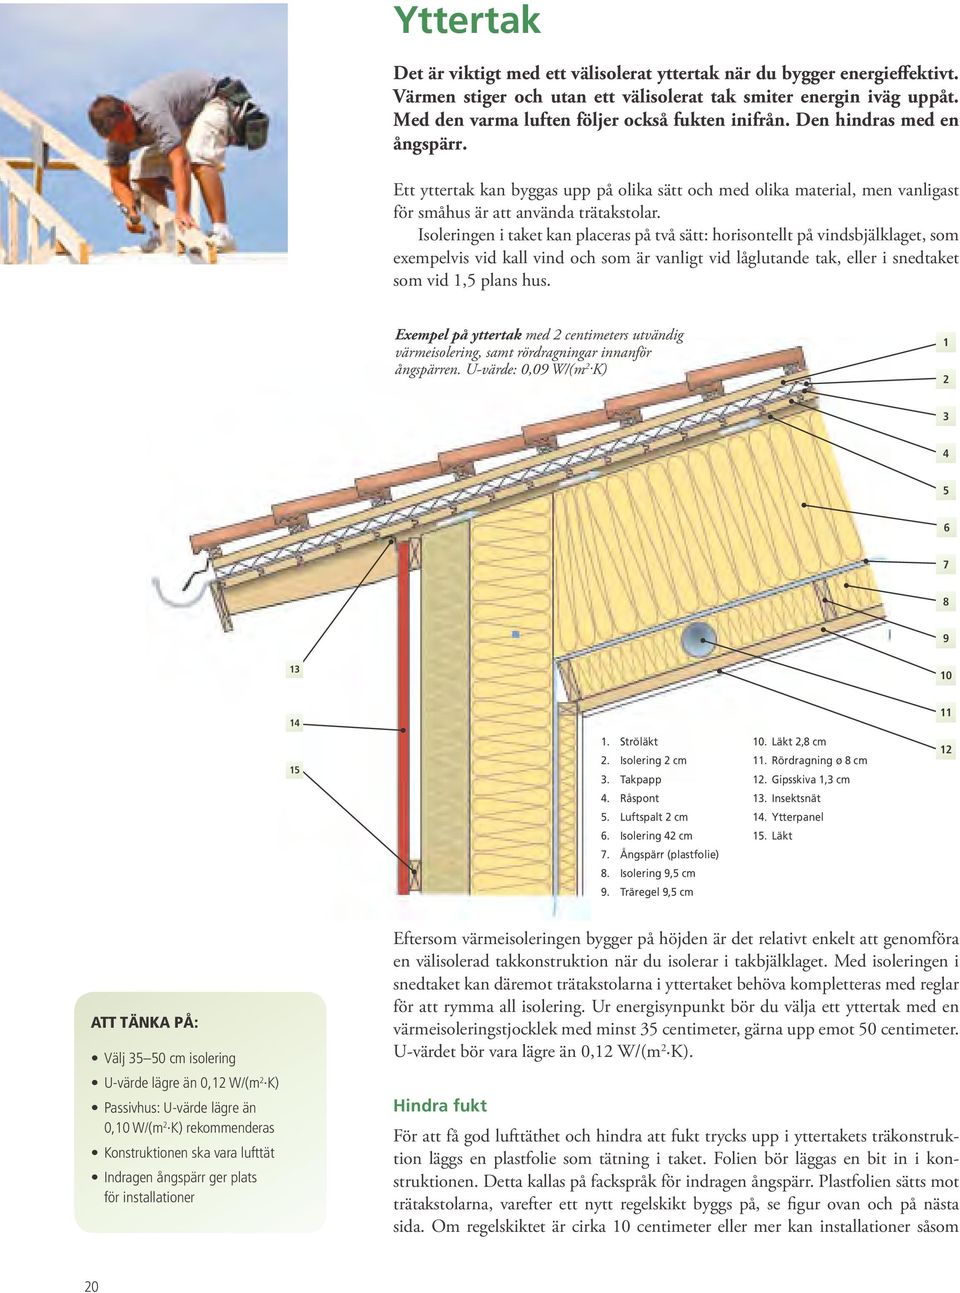 Isoleringen i taket kan placeras på två sätt: horisontellt på vindsbjälklaget, som exempelvis vid kall vind och som är vanligt vid låglutande tak, eller i snedtaket som vid 1,5 plans hus.